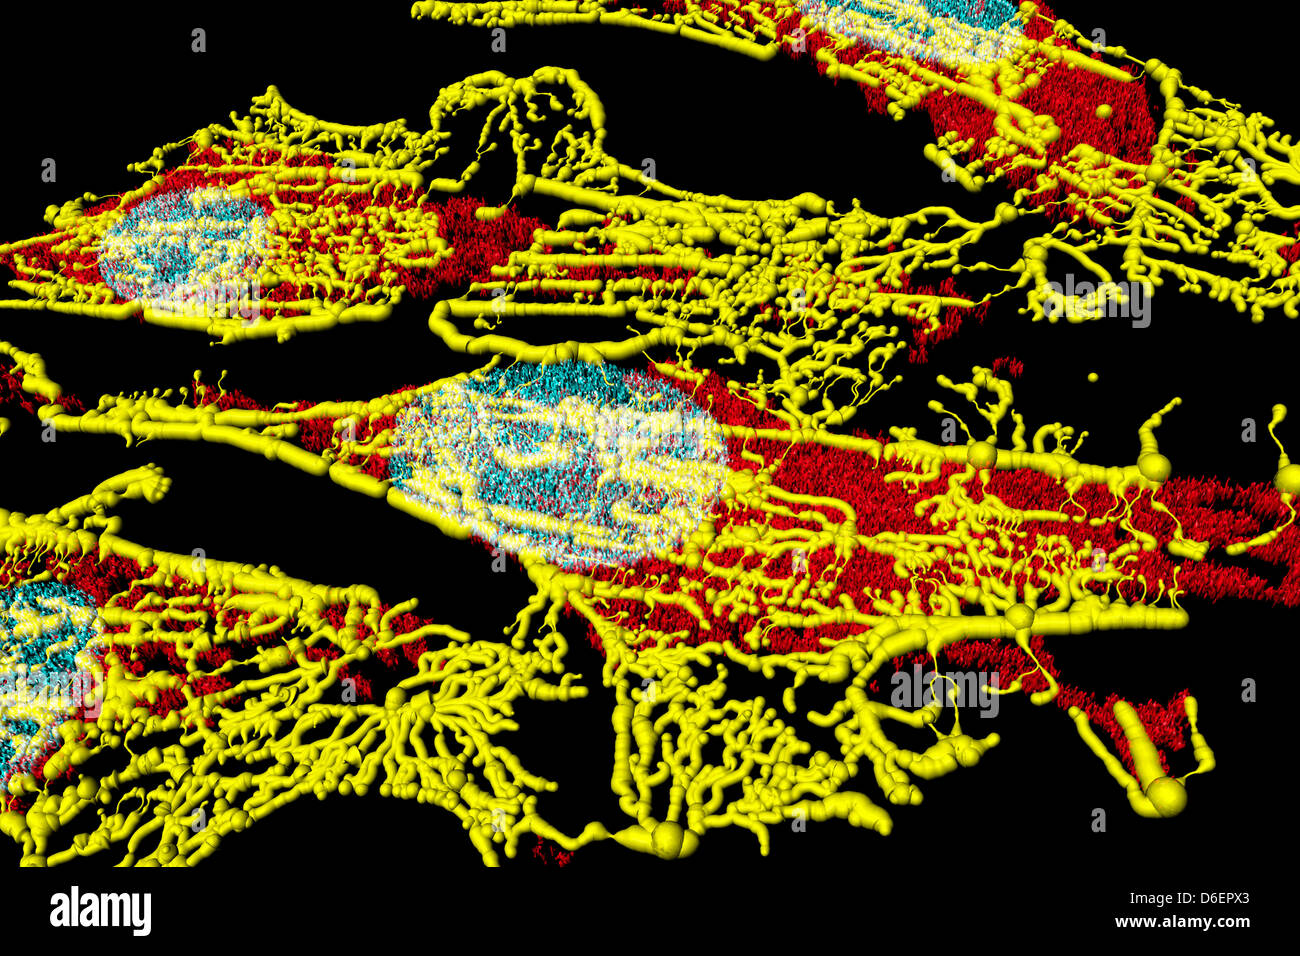 Microfilamenti (giallo), mitocondri (rosso), e nuclei (blu) in cellule di fibroblasti Foto Stock